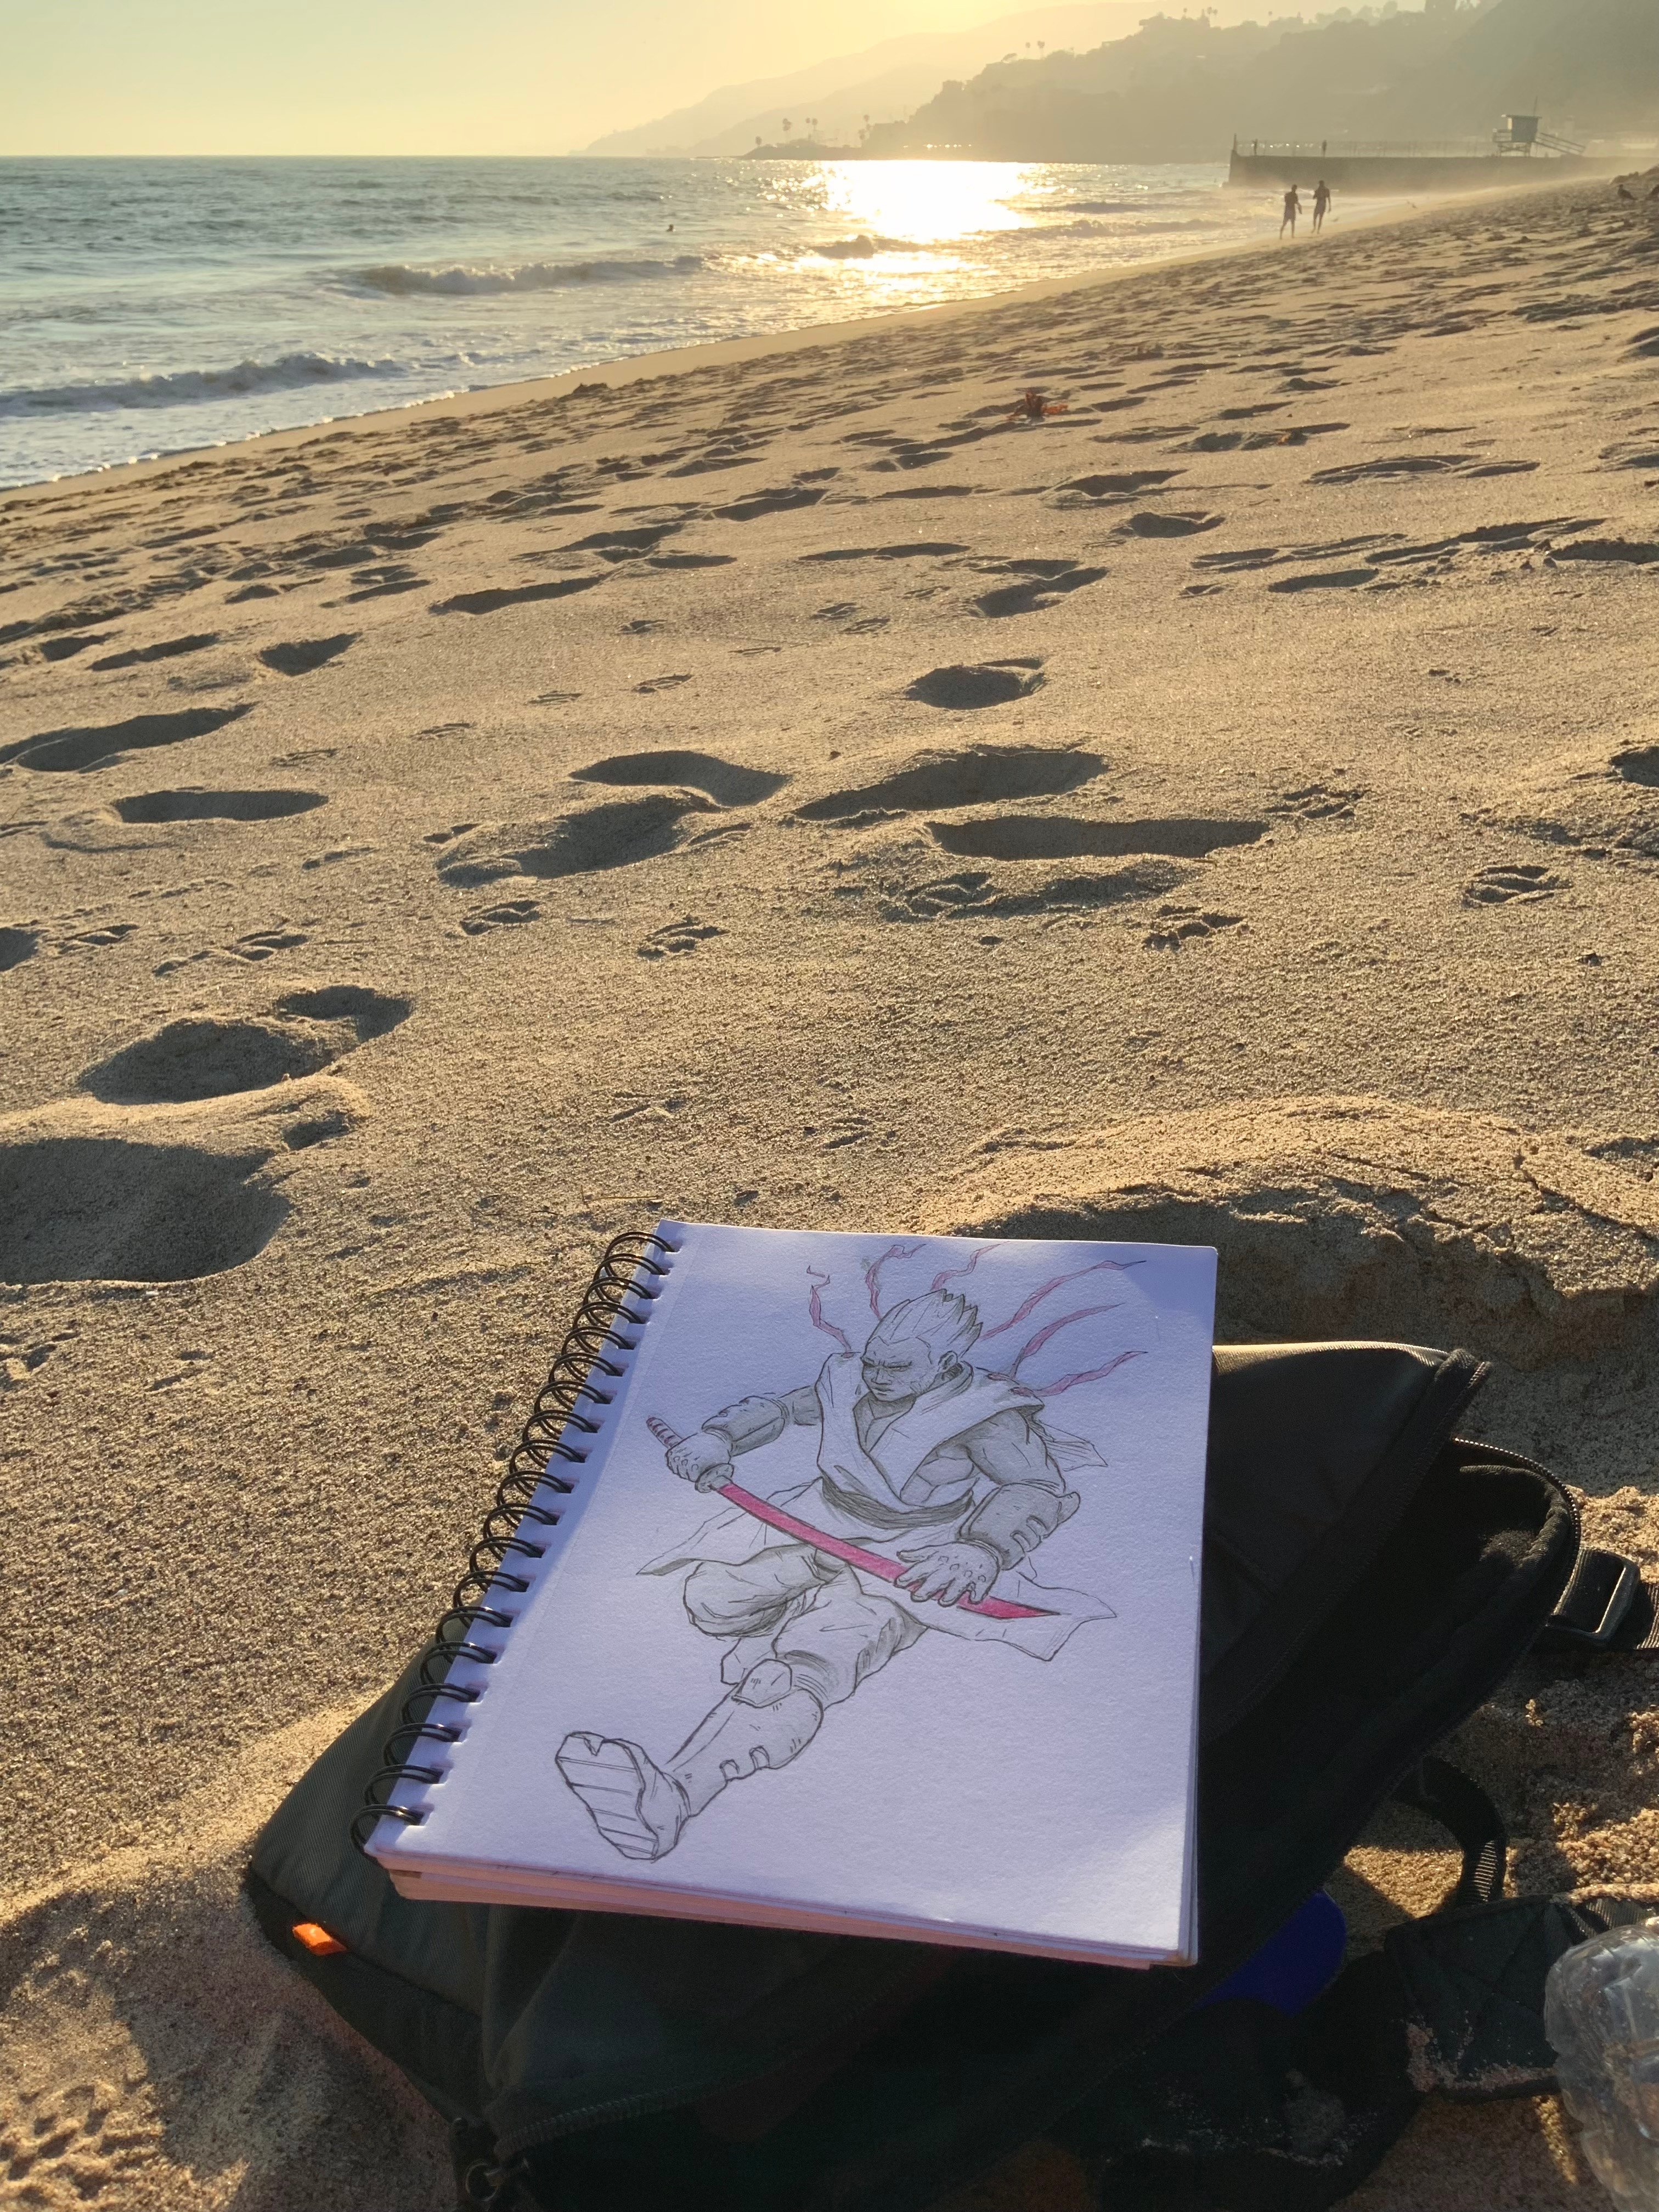 Original sketch on the beach!